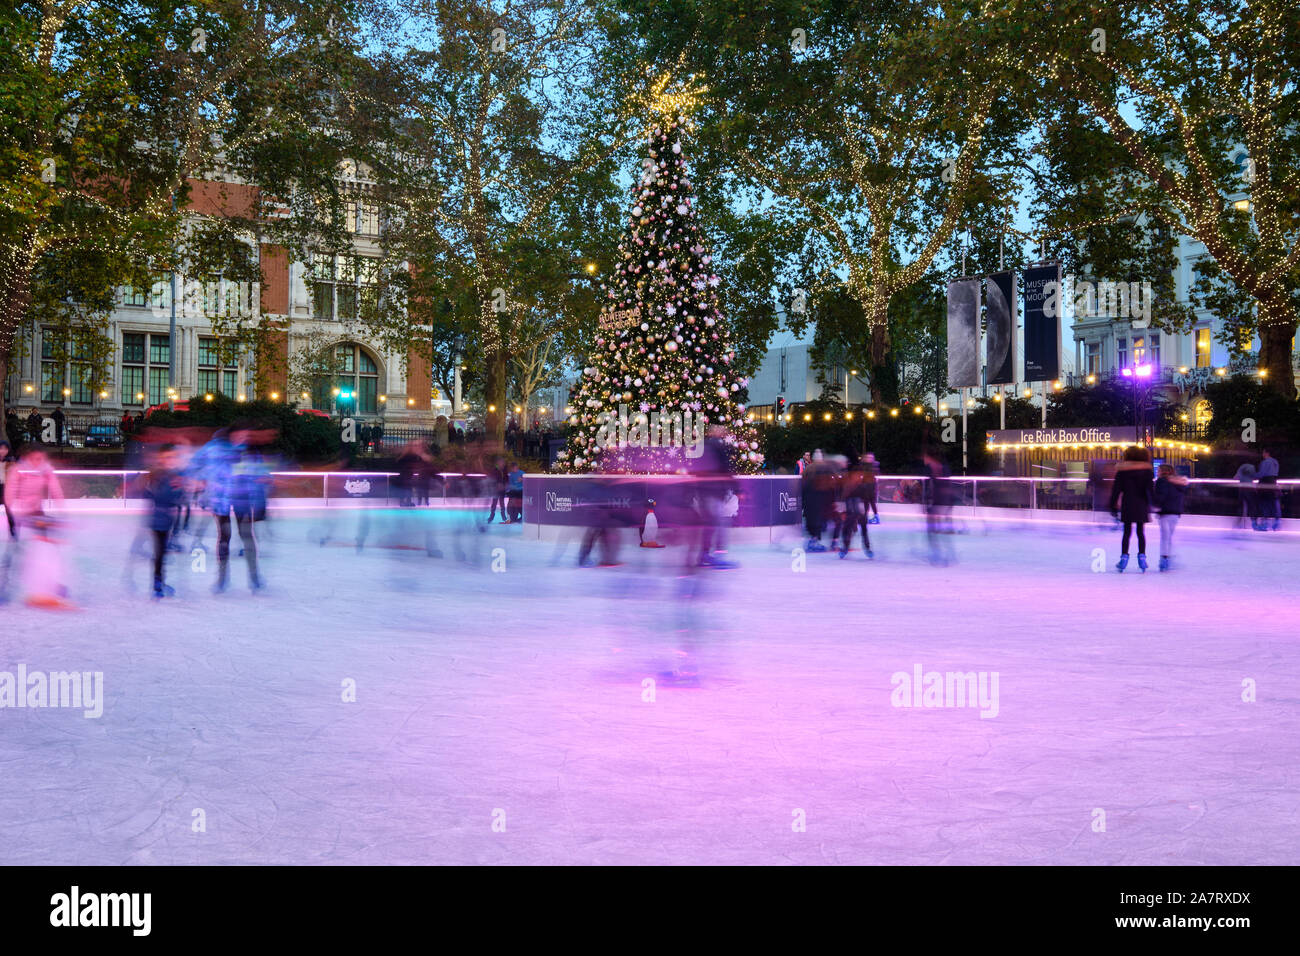 Sfocatura Movimento immagine di persone pattinaggio sul Natale decorato pista di pattinaggio su ghiaccio a Londra il Museo di Storia Naturale al crepuscolo, intorno al centro di albero di natale. Foto Stock